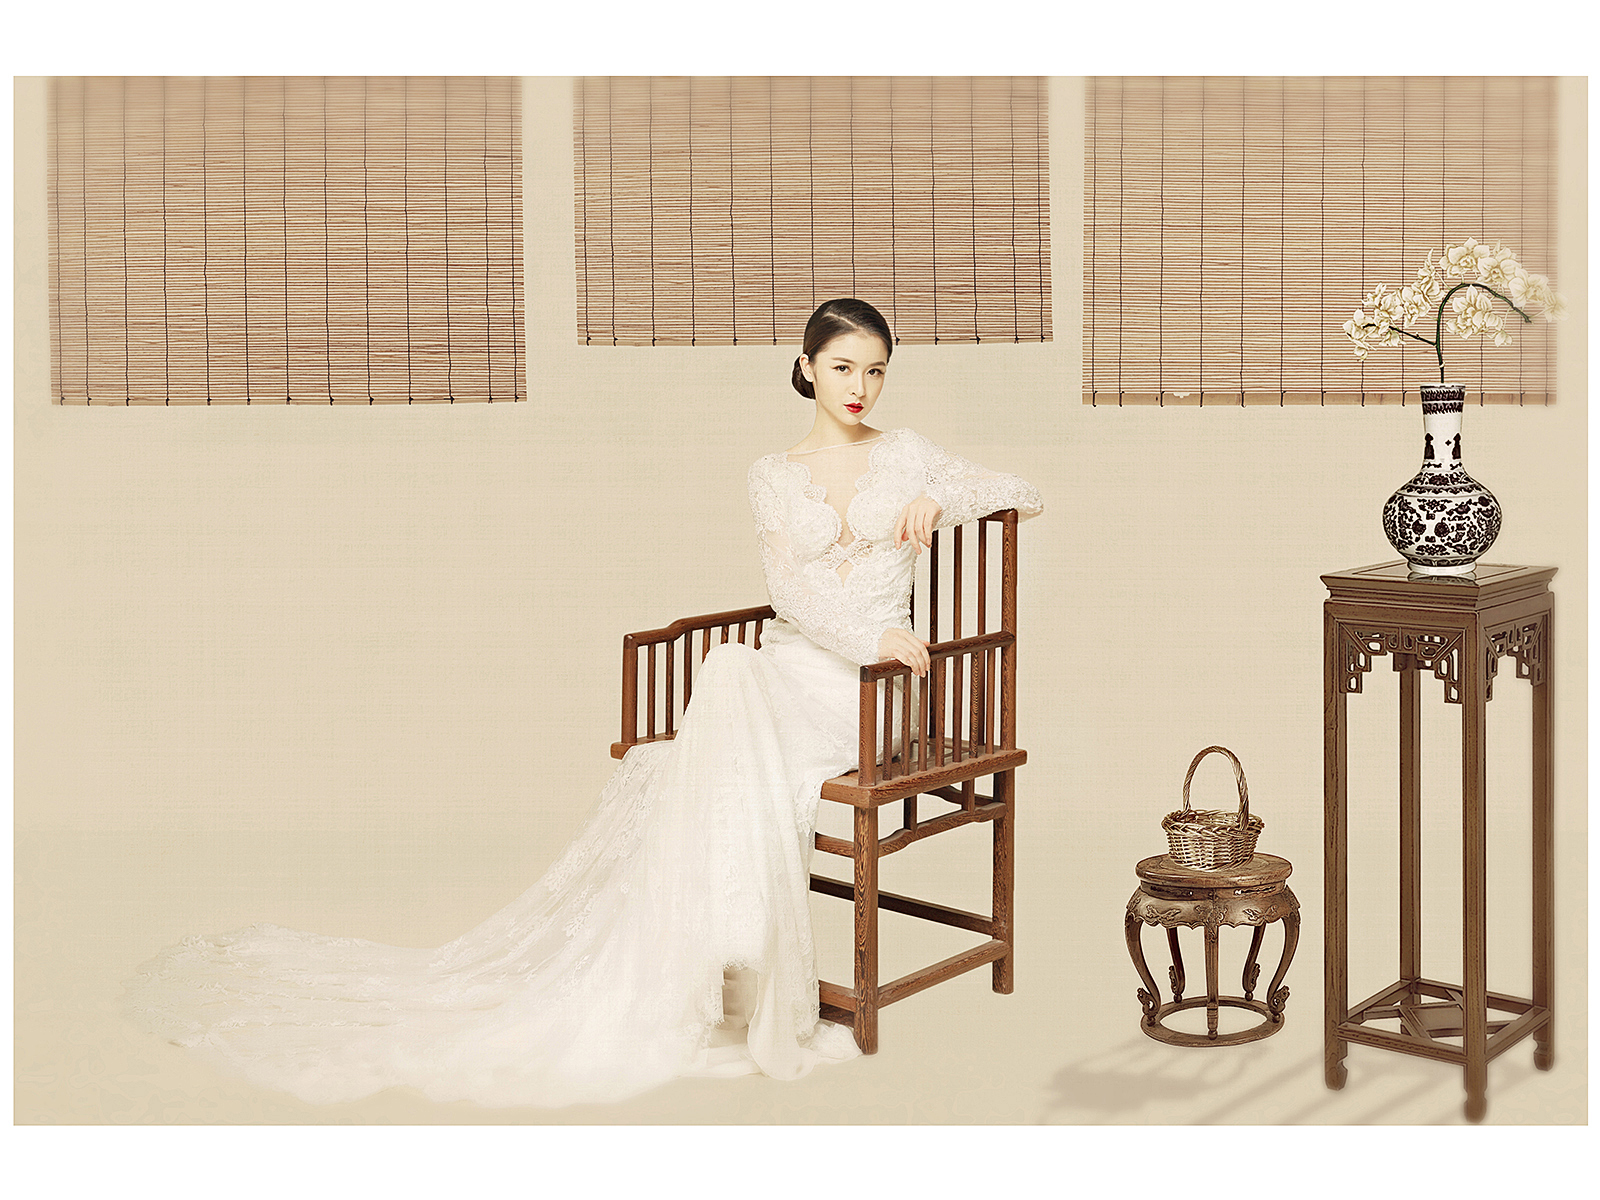 中式婚纱照——#蔓延视觉·风格大赏##工笔风##画意风#